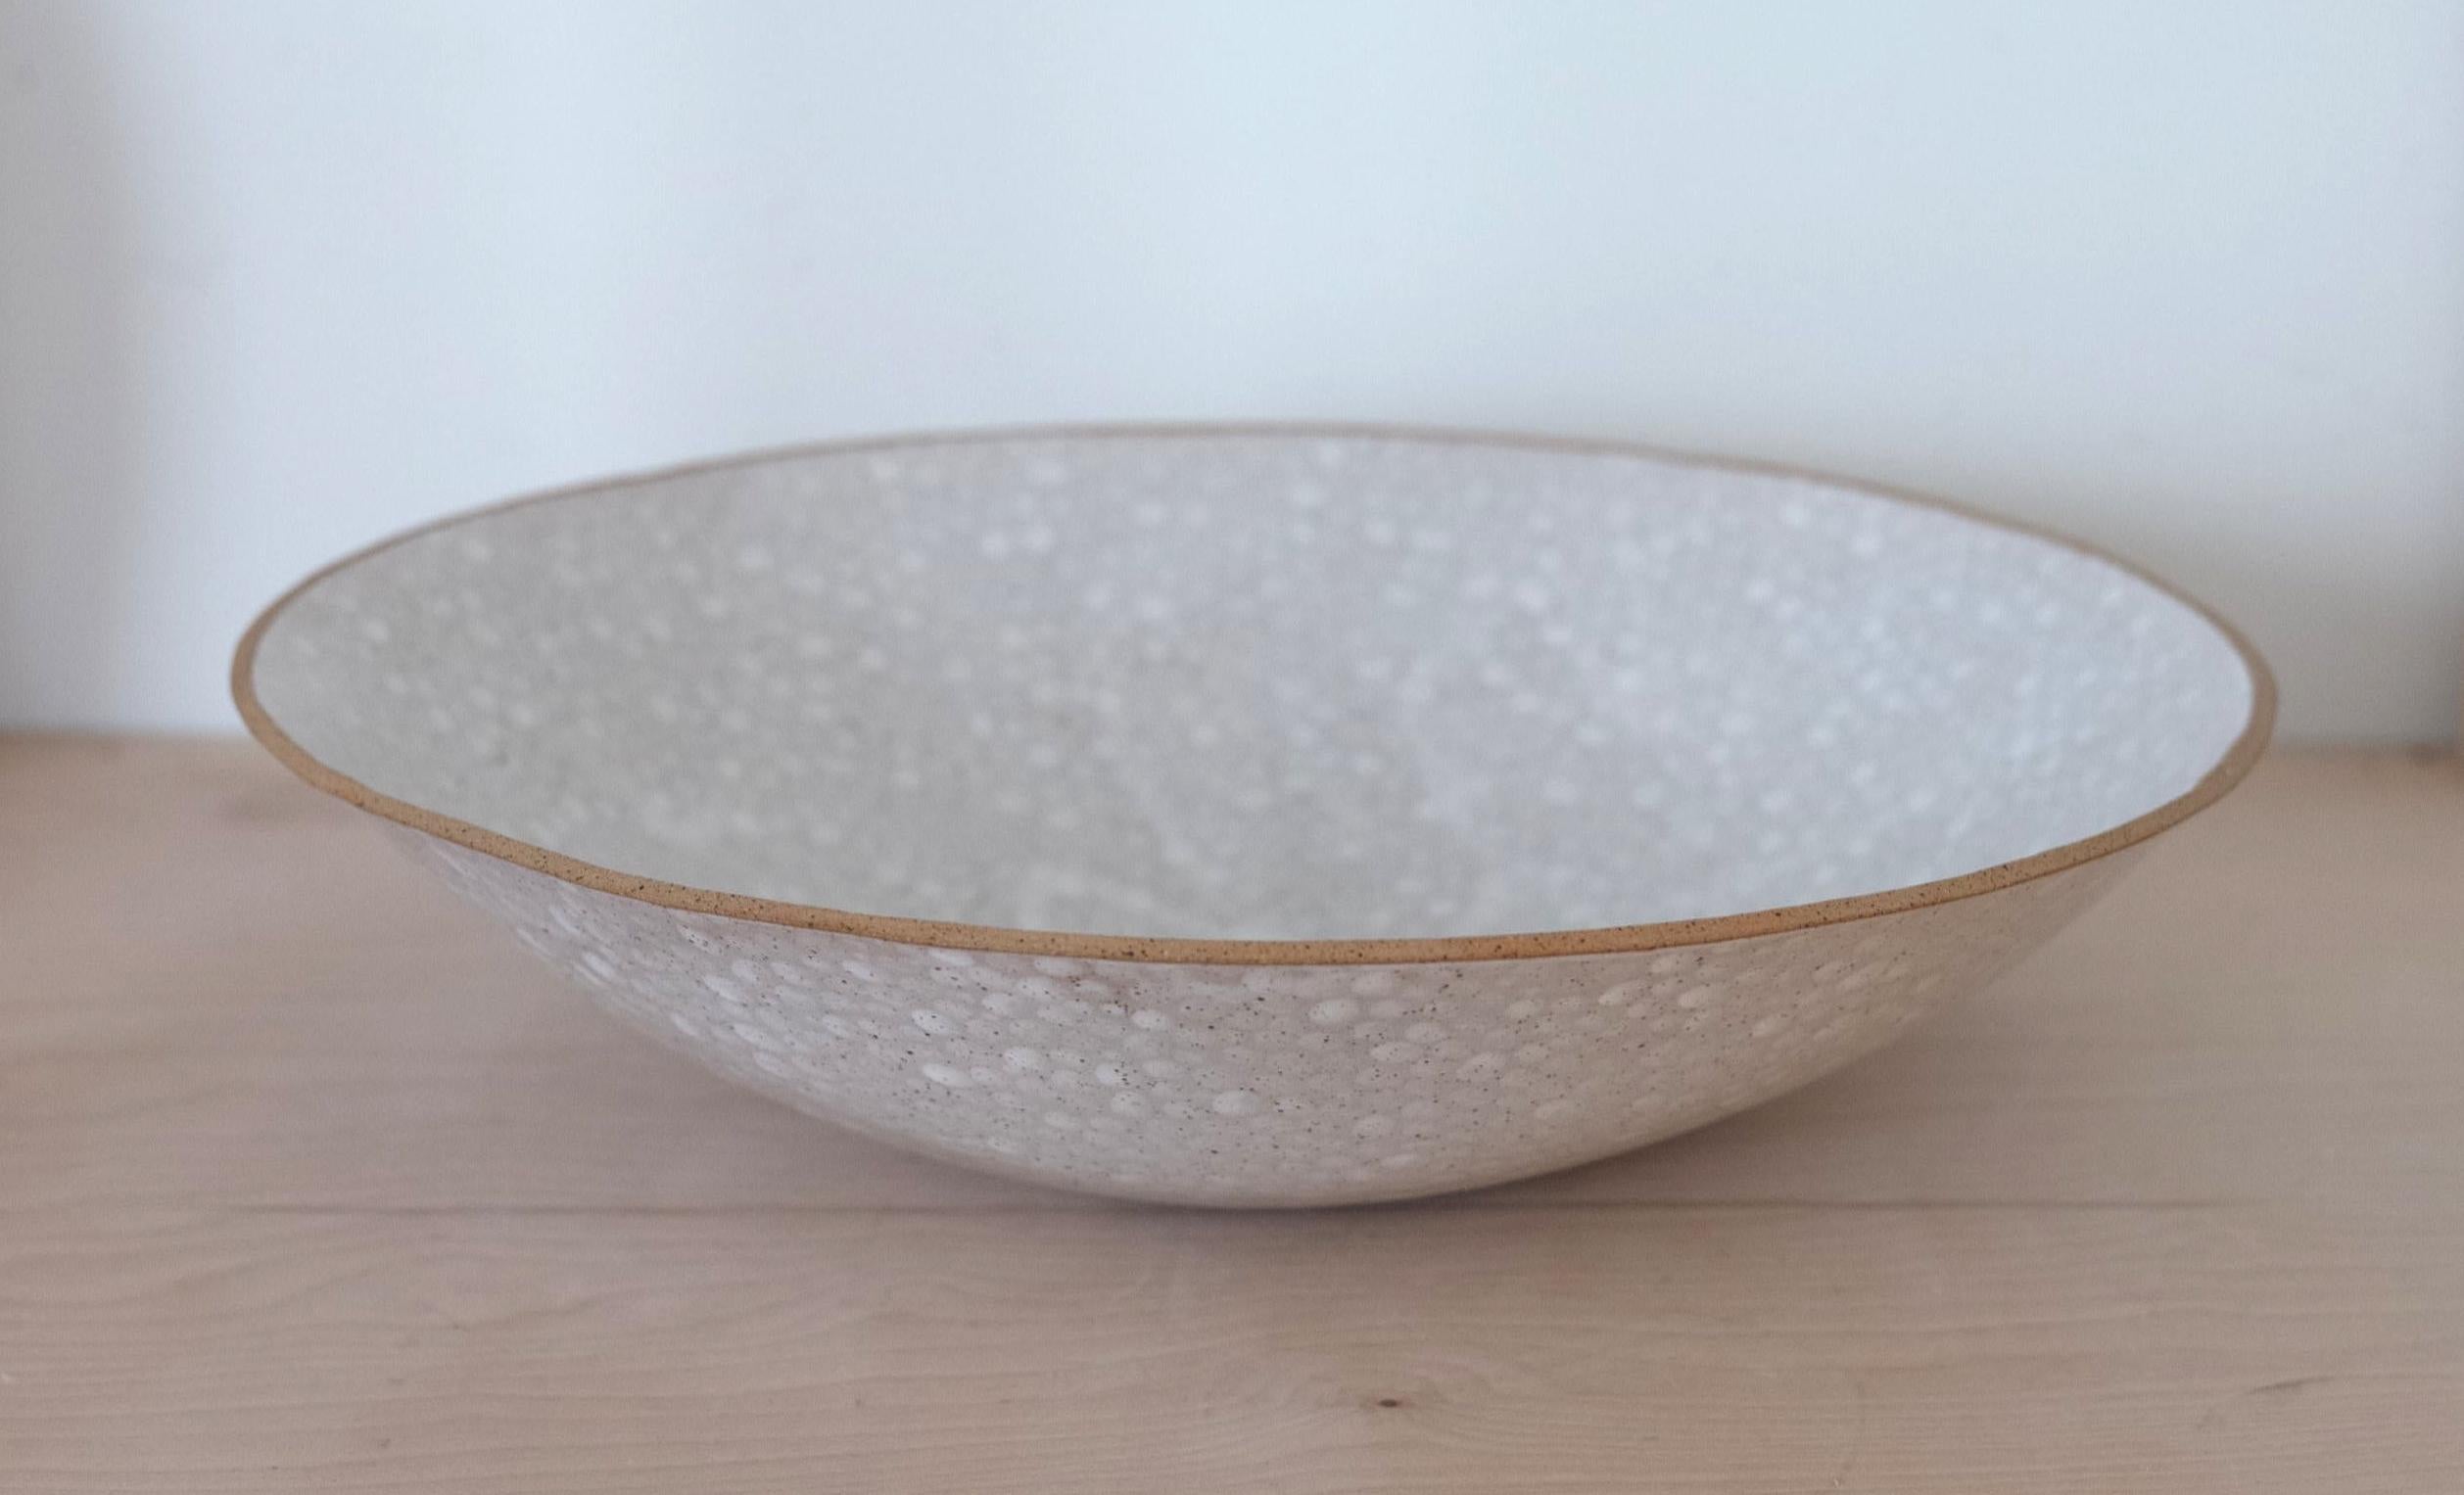 Contemporary Dots Ceramic Bowl by Lana Kova, Various Glazes Available